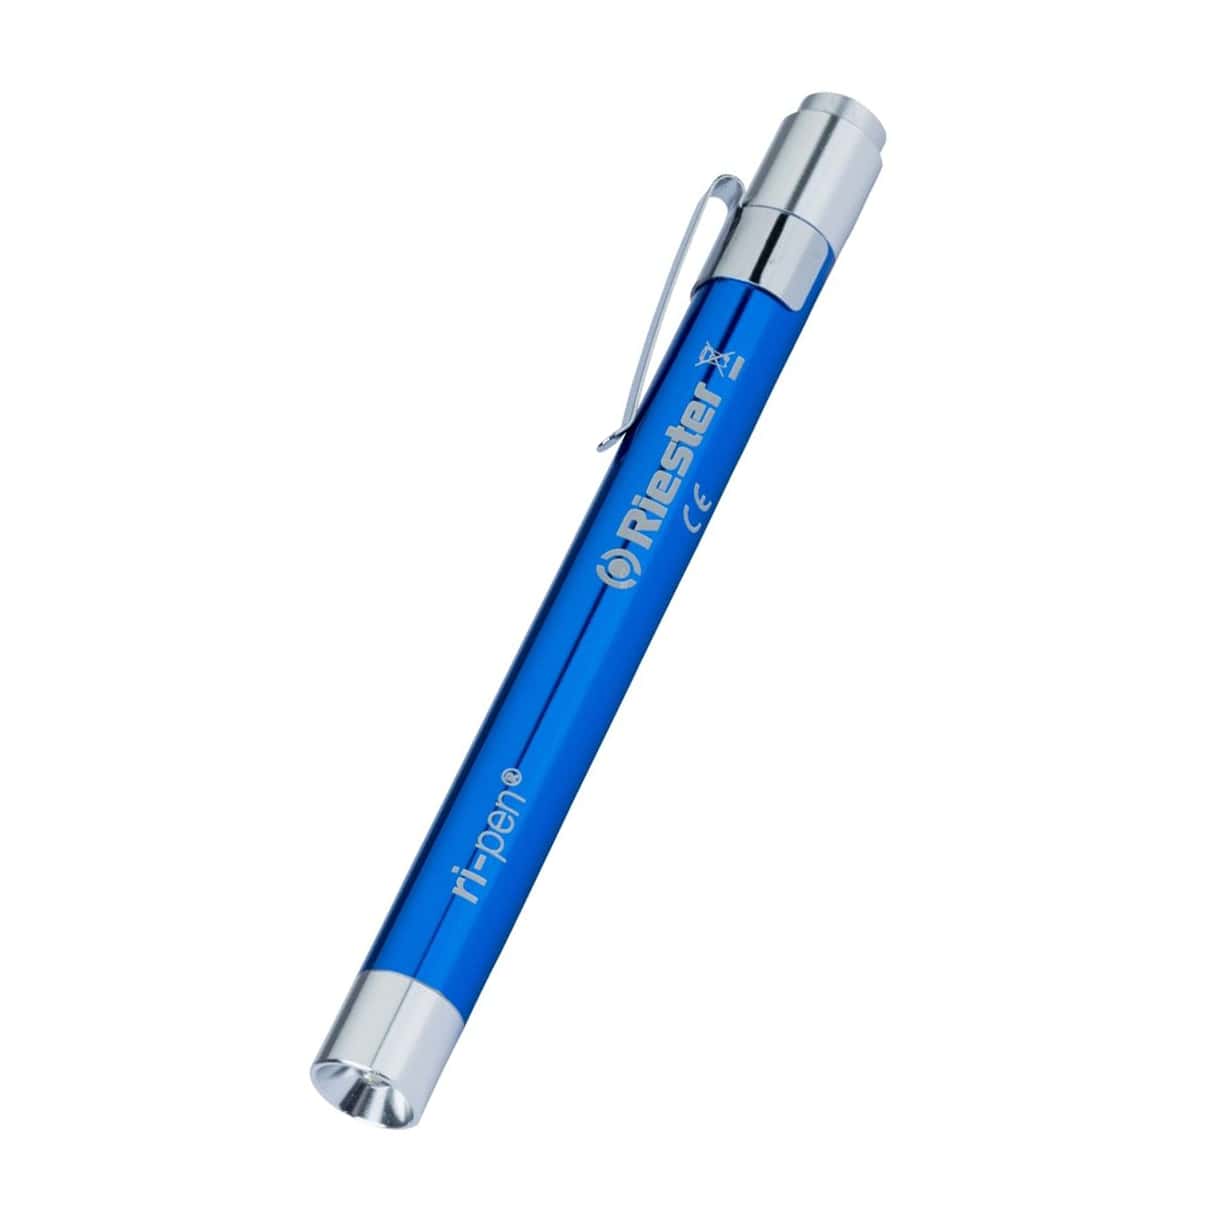 نکته خرید - قیمت روز چراغ قوه پزشکی ریشتر مدل ri-pen خرید